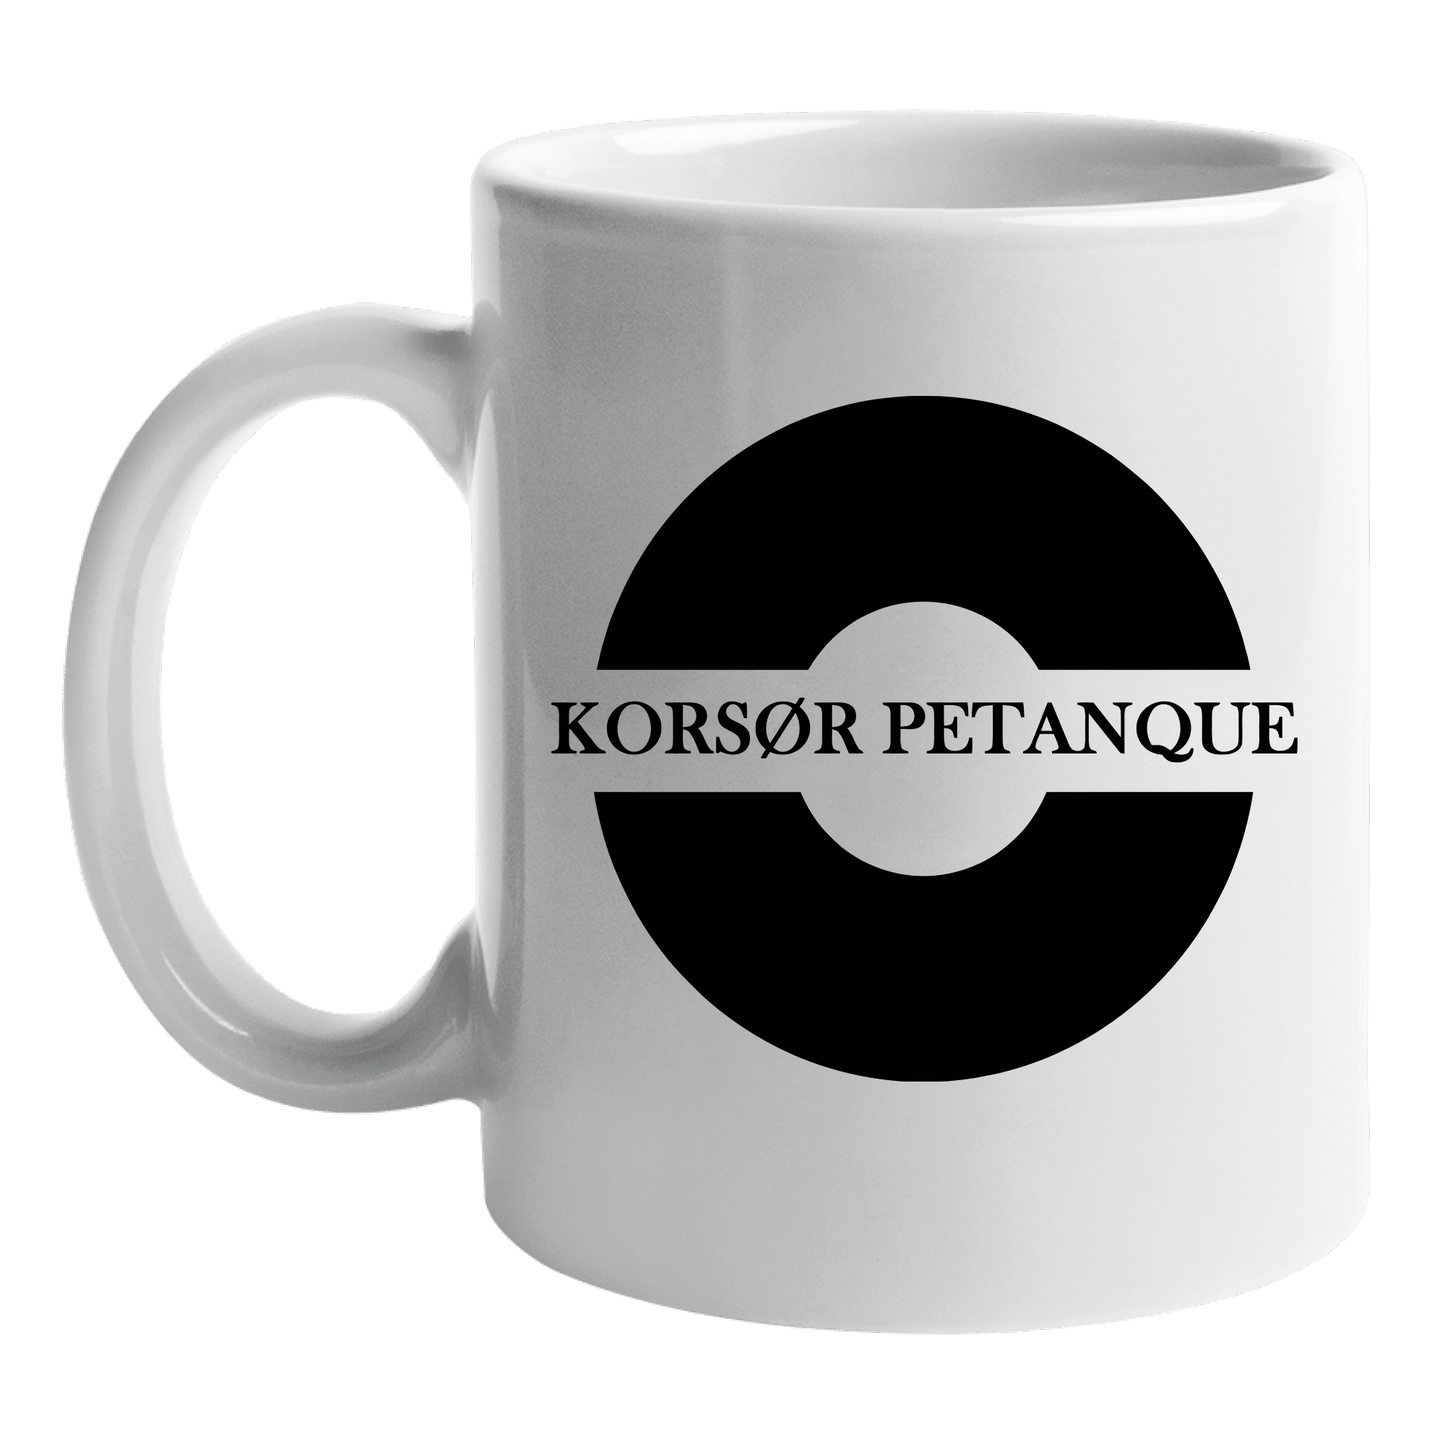 Kop med klub logo - Korsør petanque klub